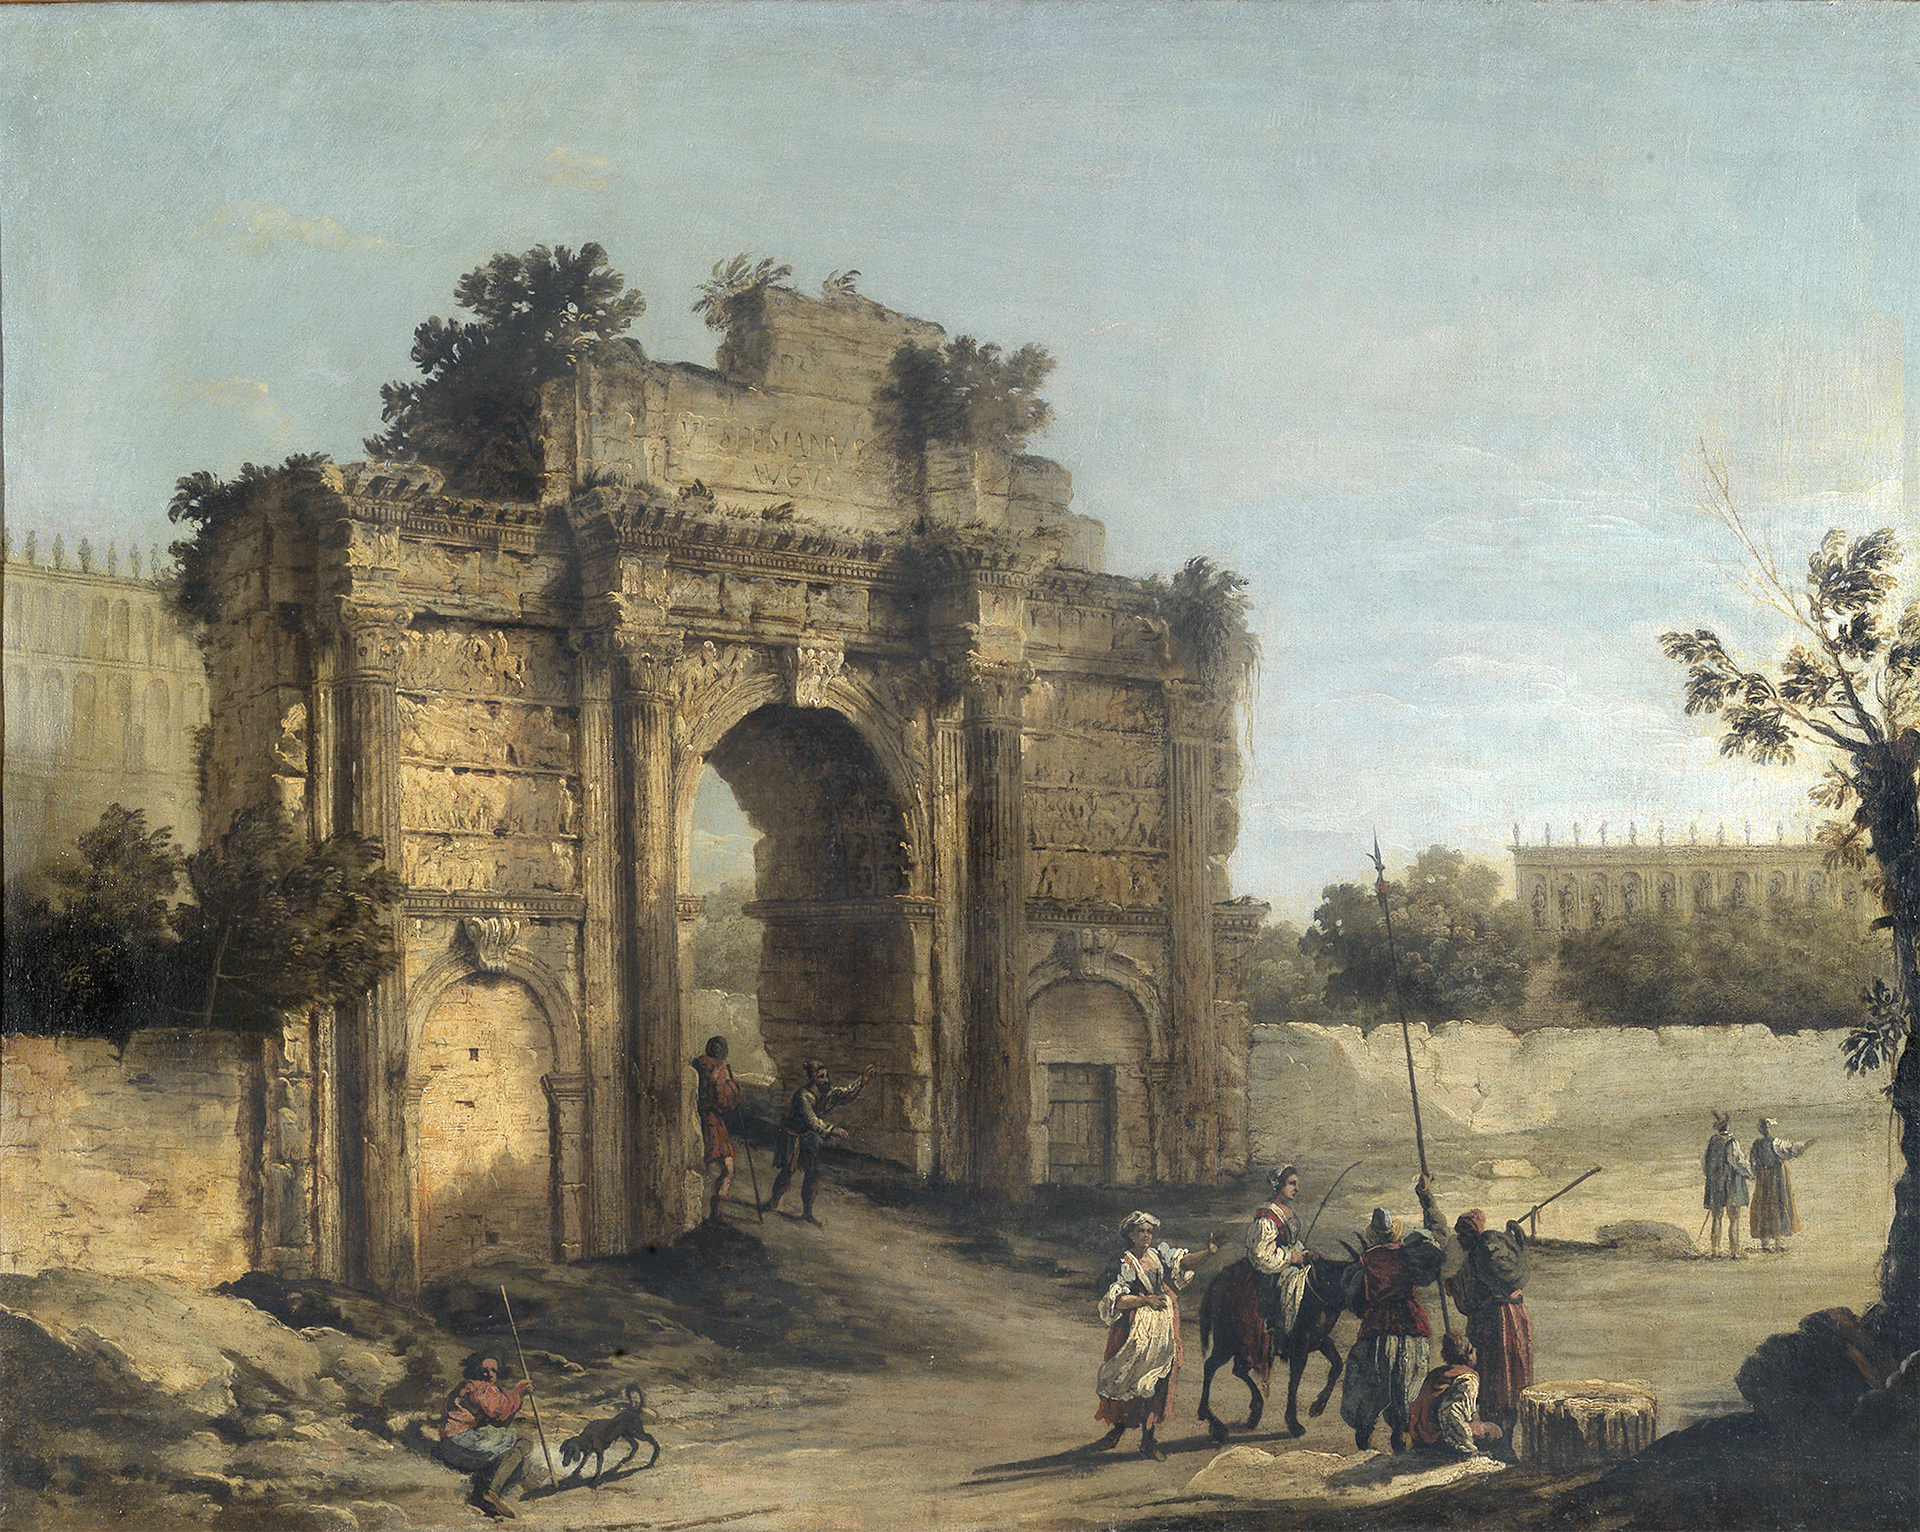 The Arch of Settimio Severo